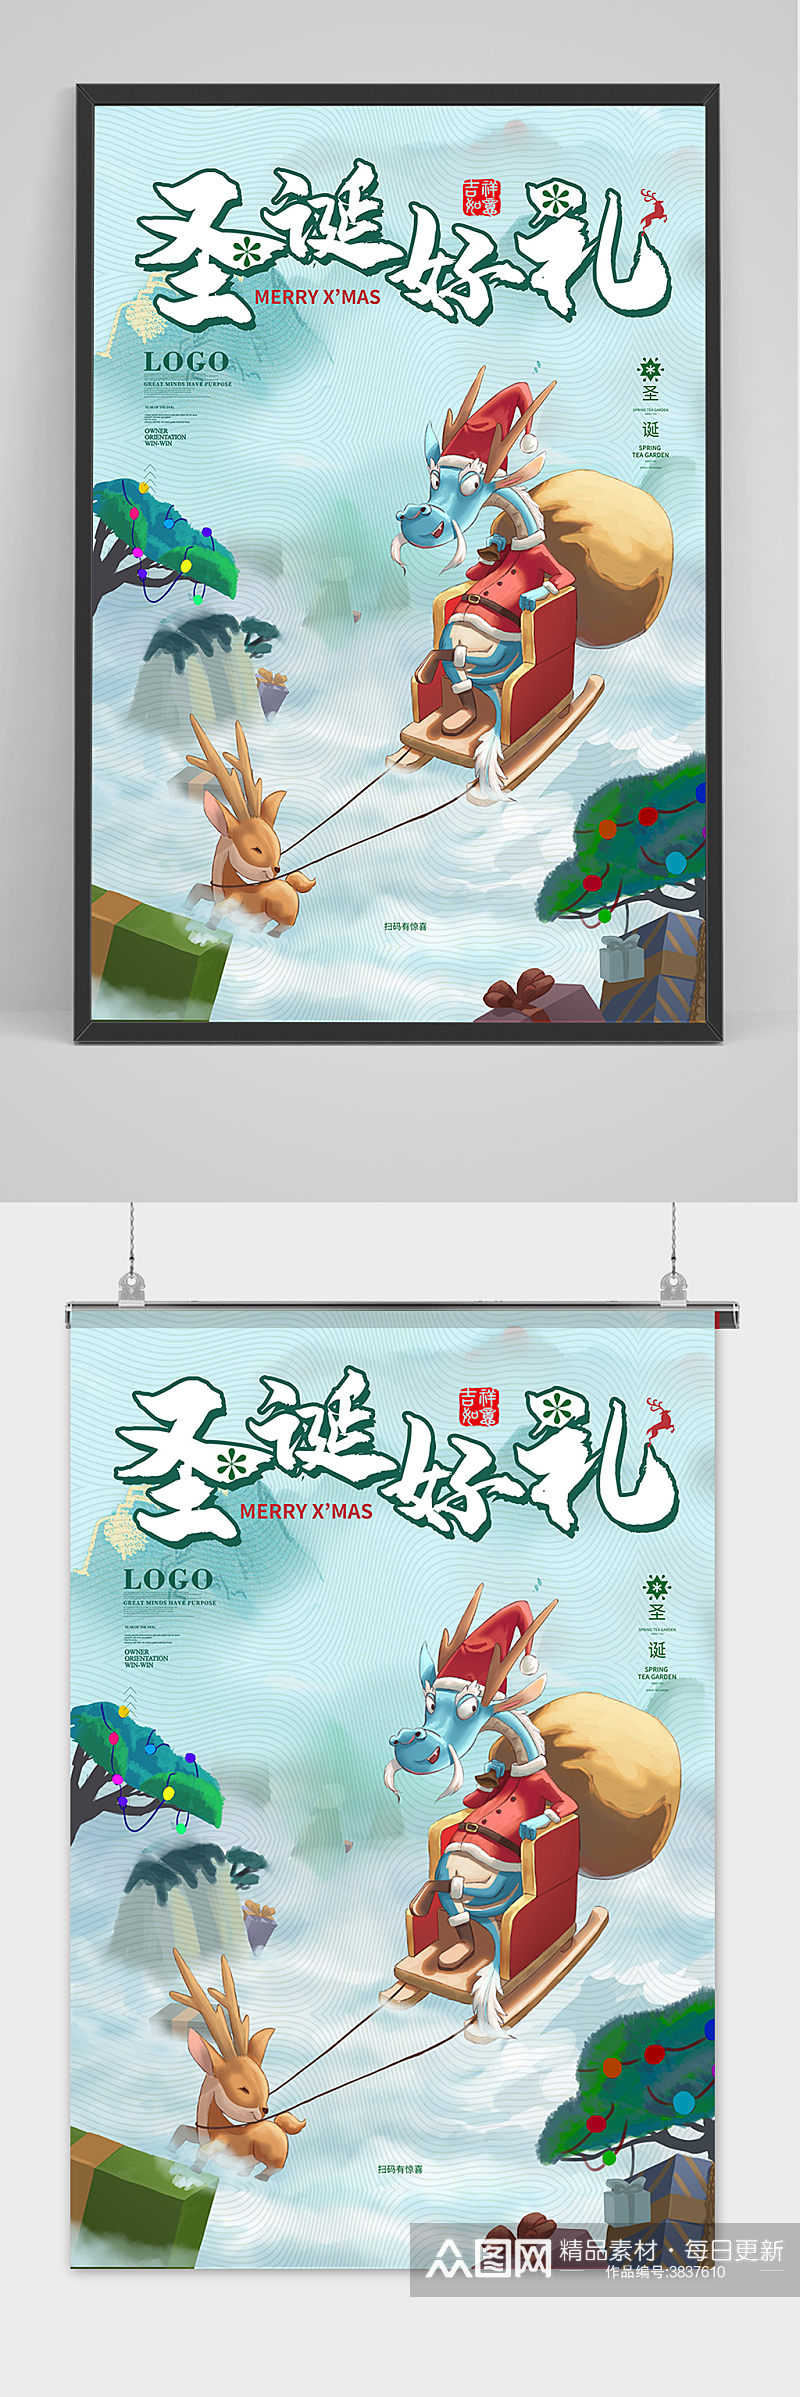 青色中国风圣诞节中国龙派礼海报素材